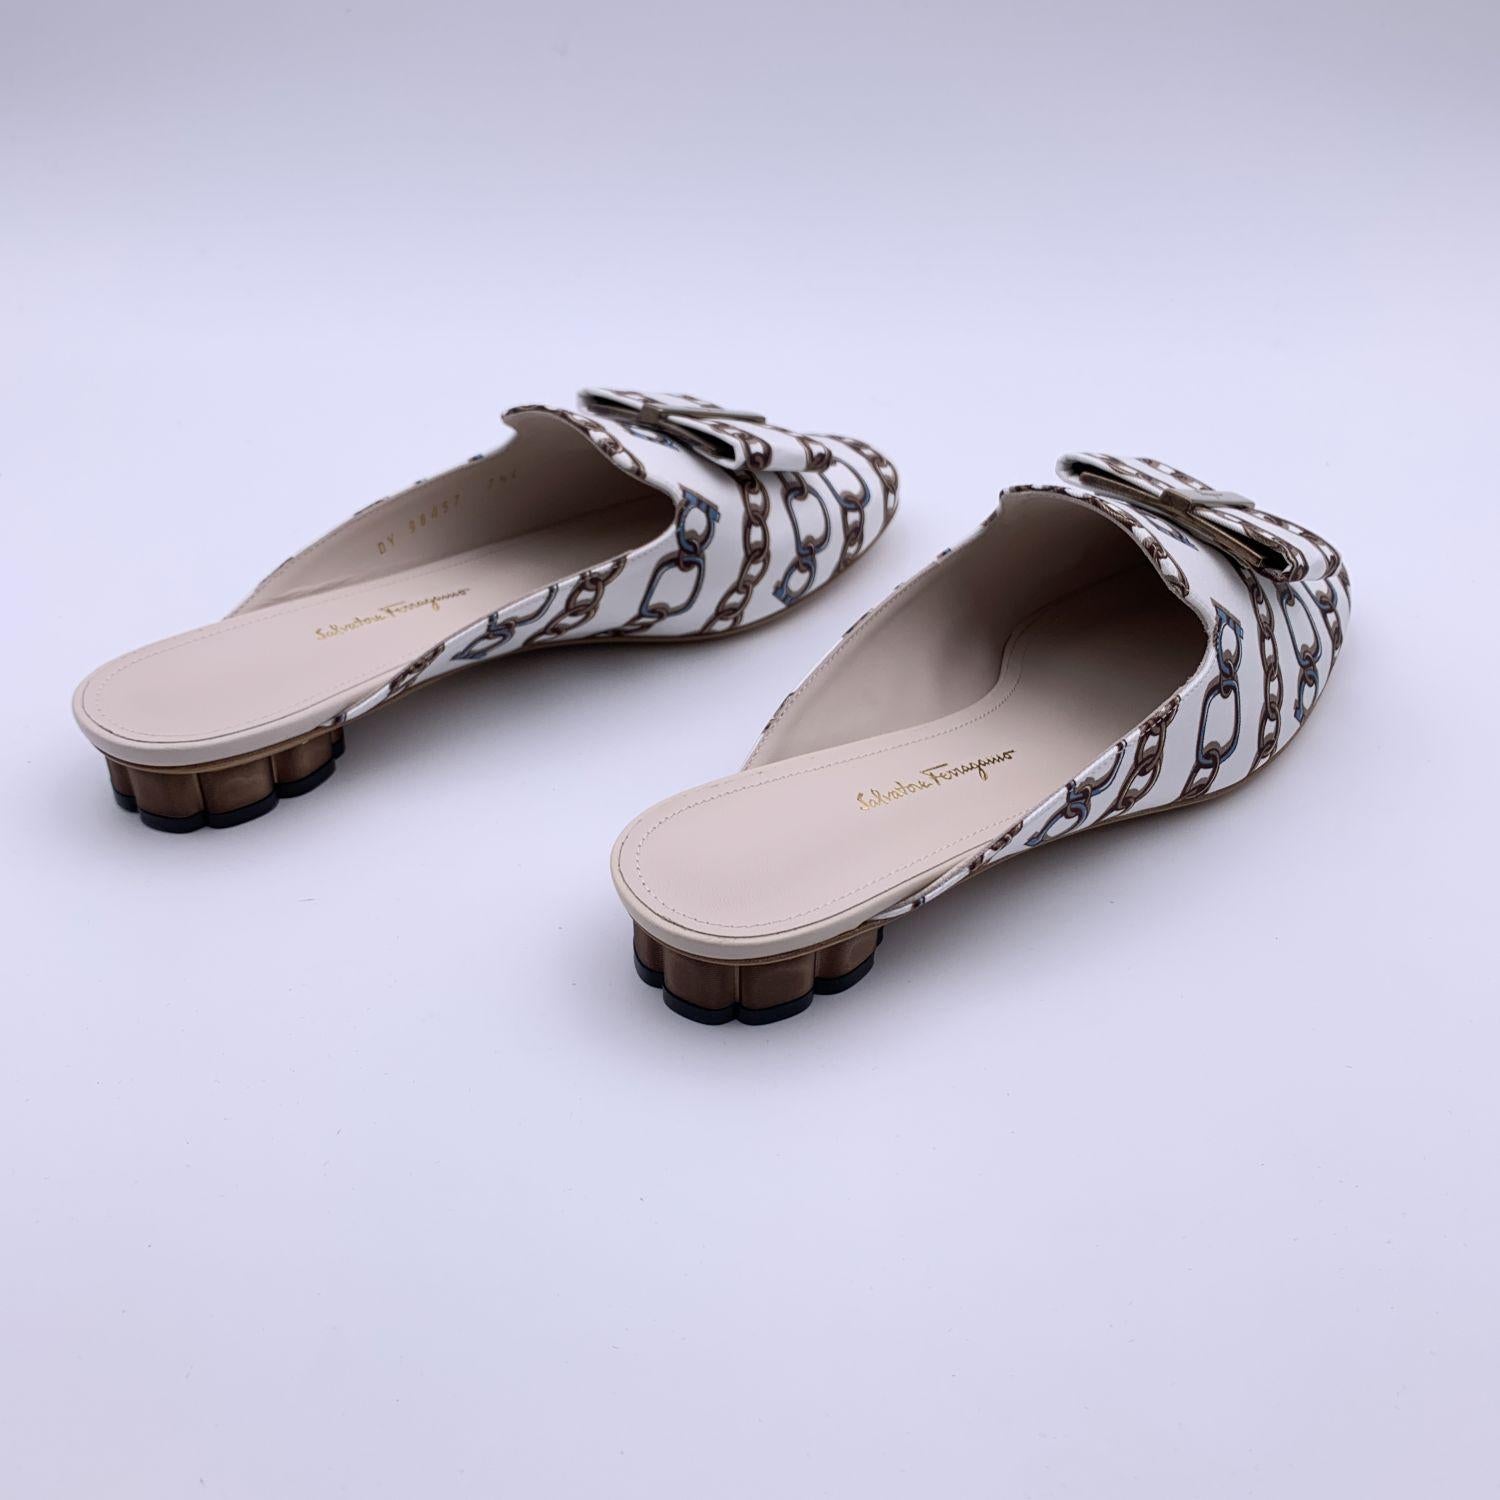 Gray Salvatore Ferragamo White Chain Sciacca Twill Shoes Size US 7.5C EU 38